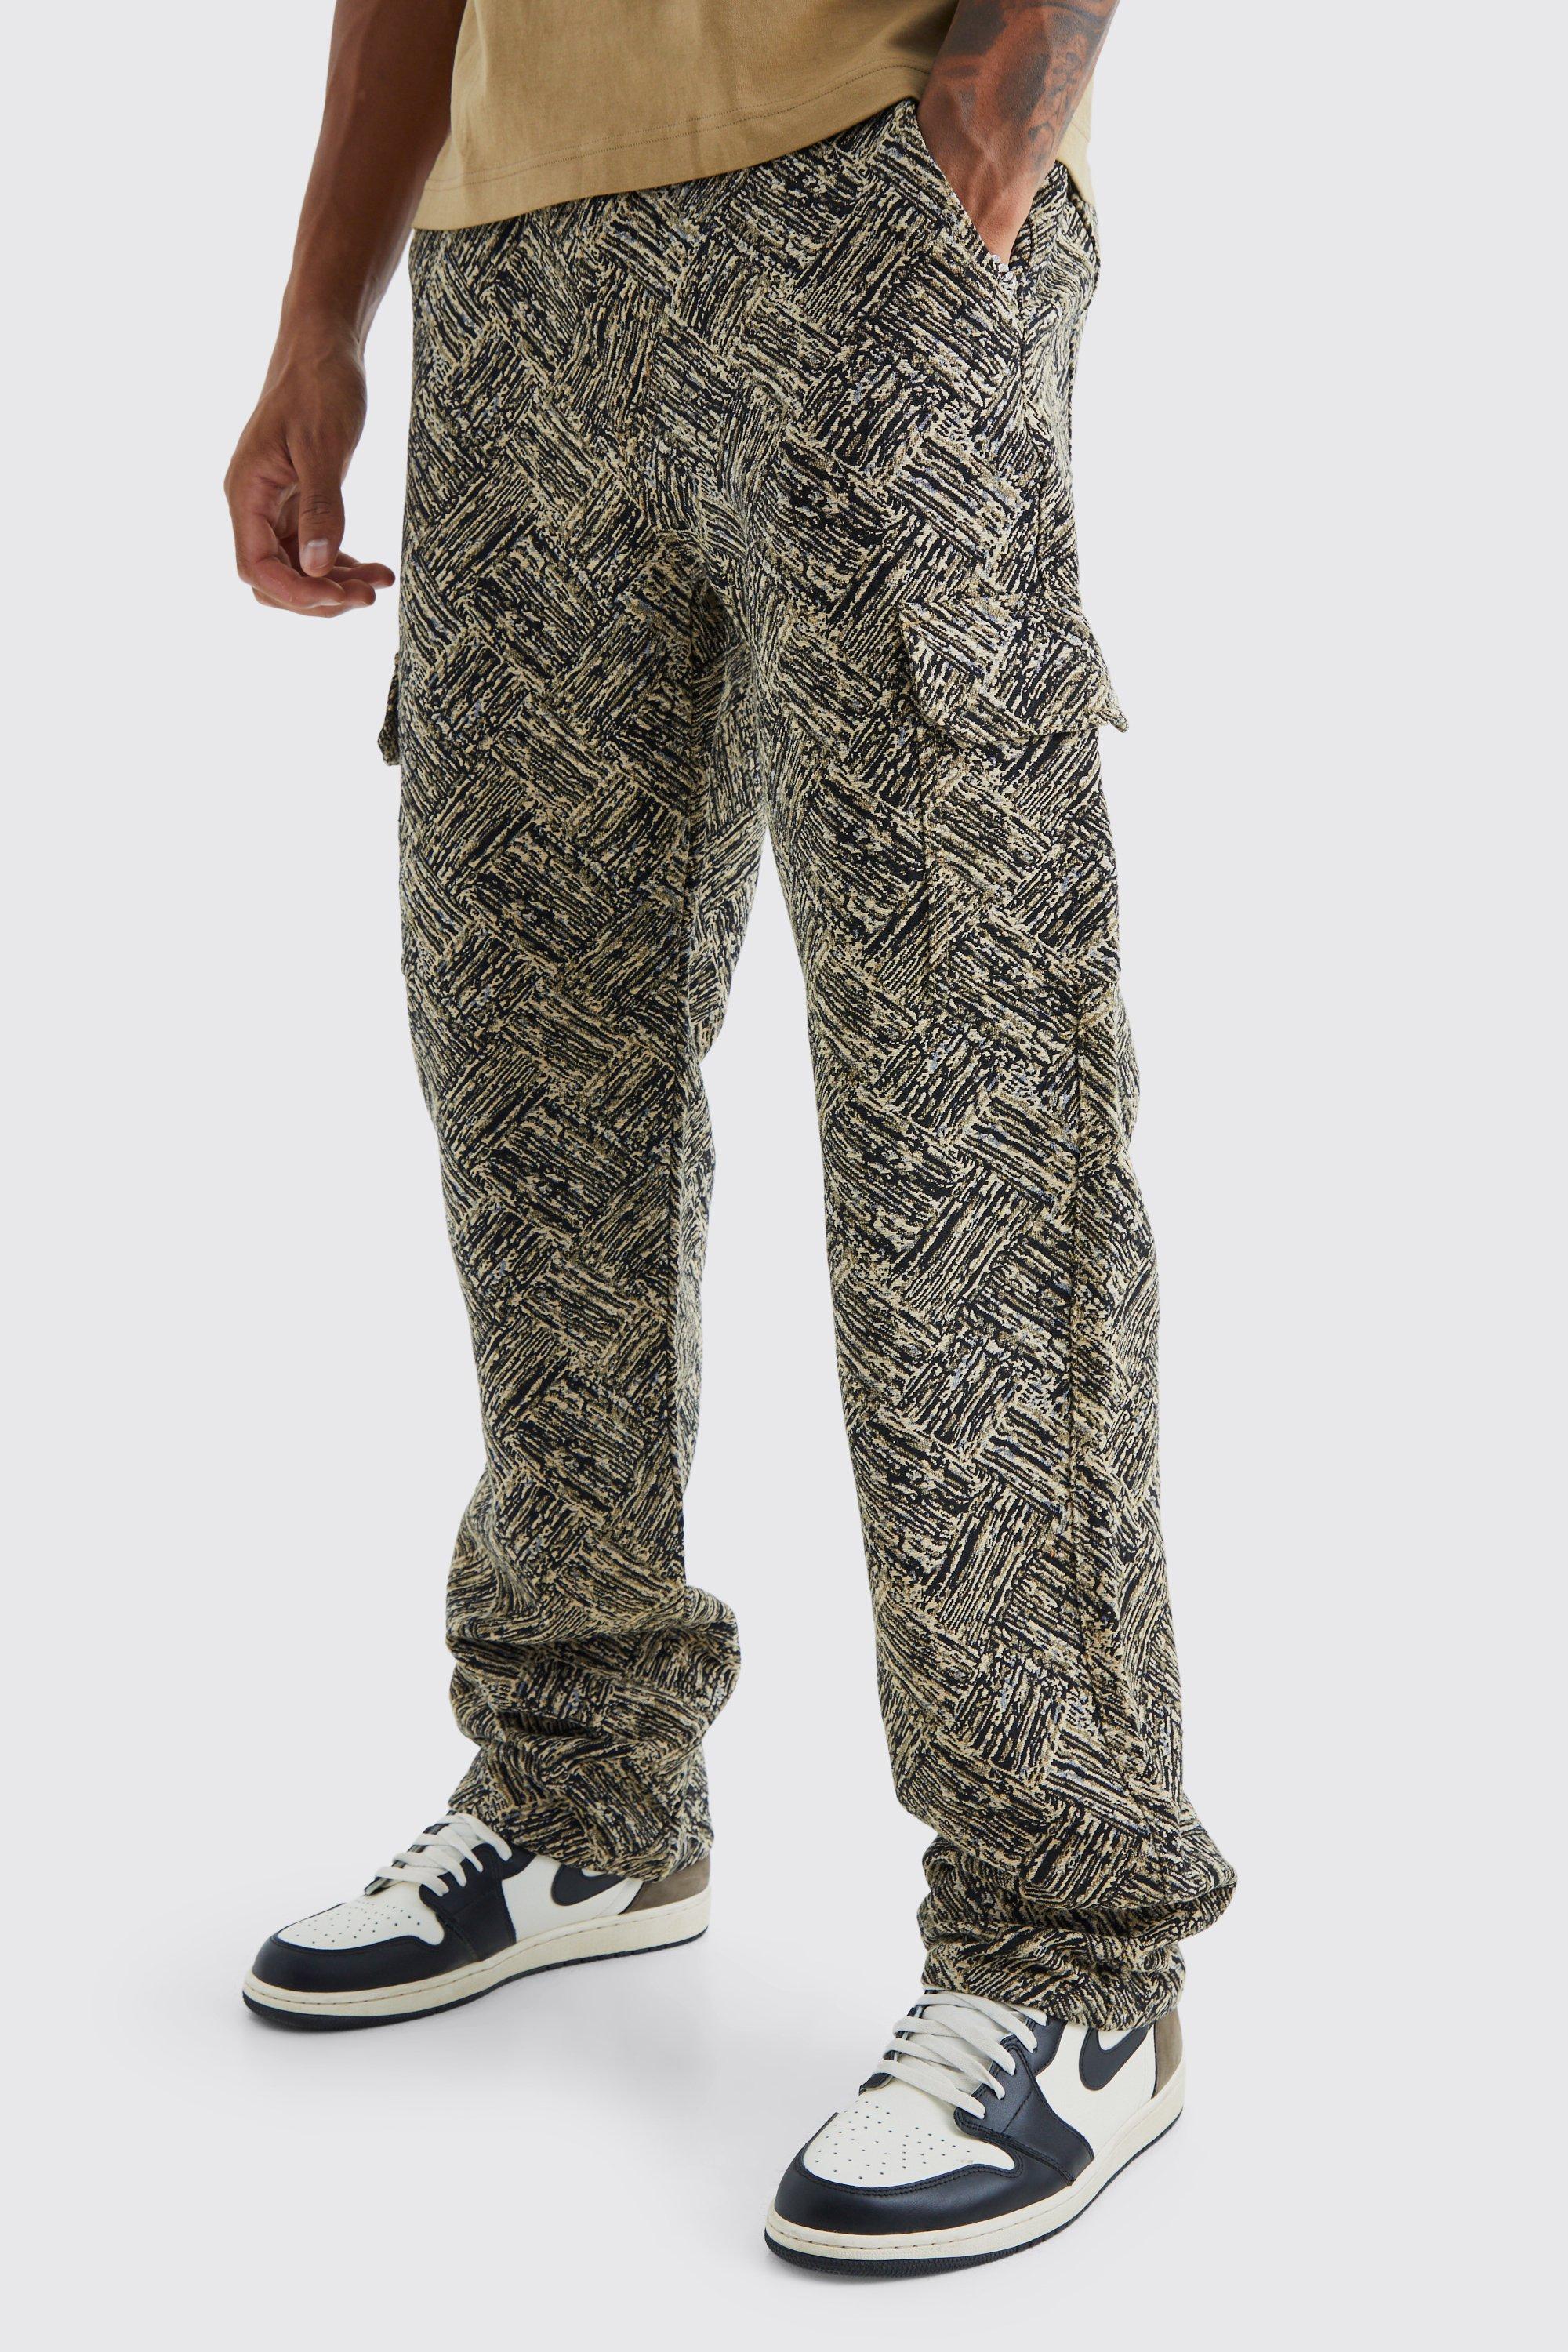 tall - pantalon large à motif tapisserie homme - noir - 34, noir